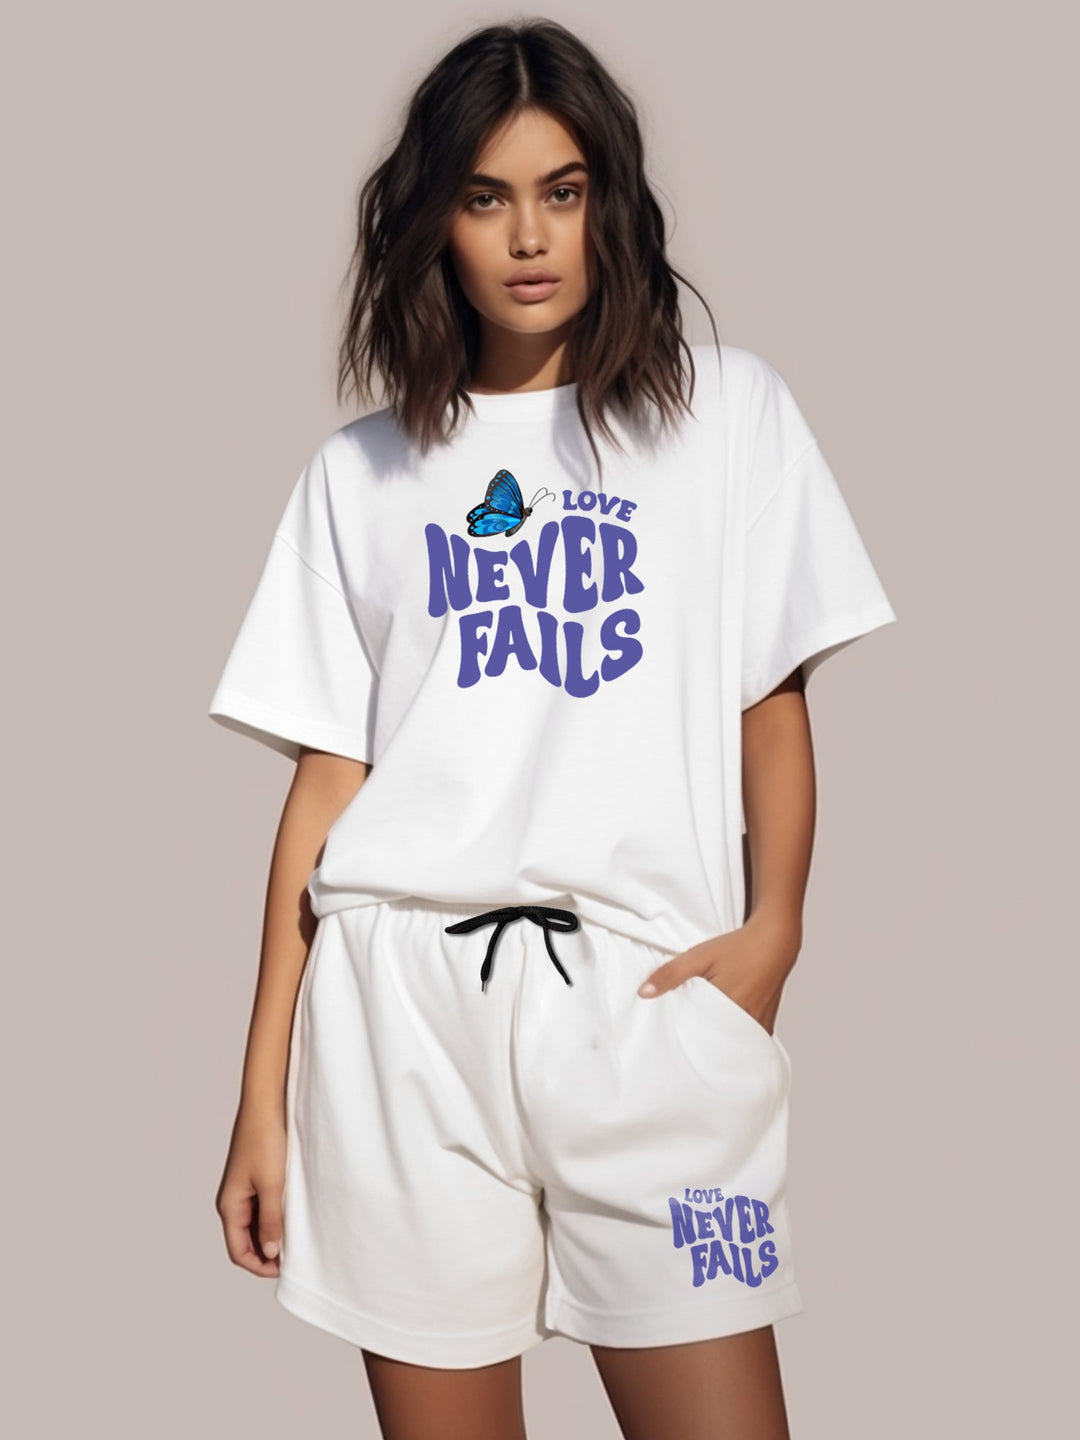 Love Never Fails Cotton Girls T Shirt and Short Set